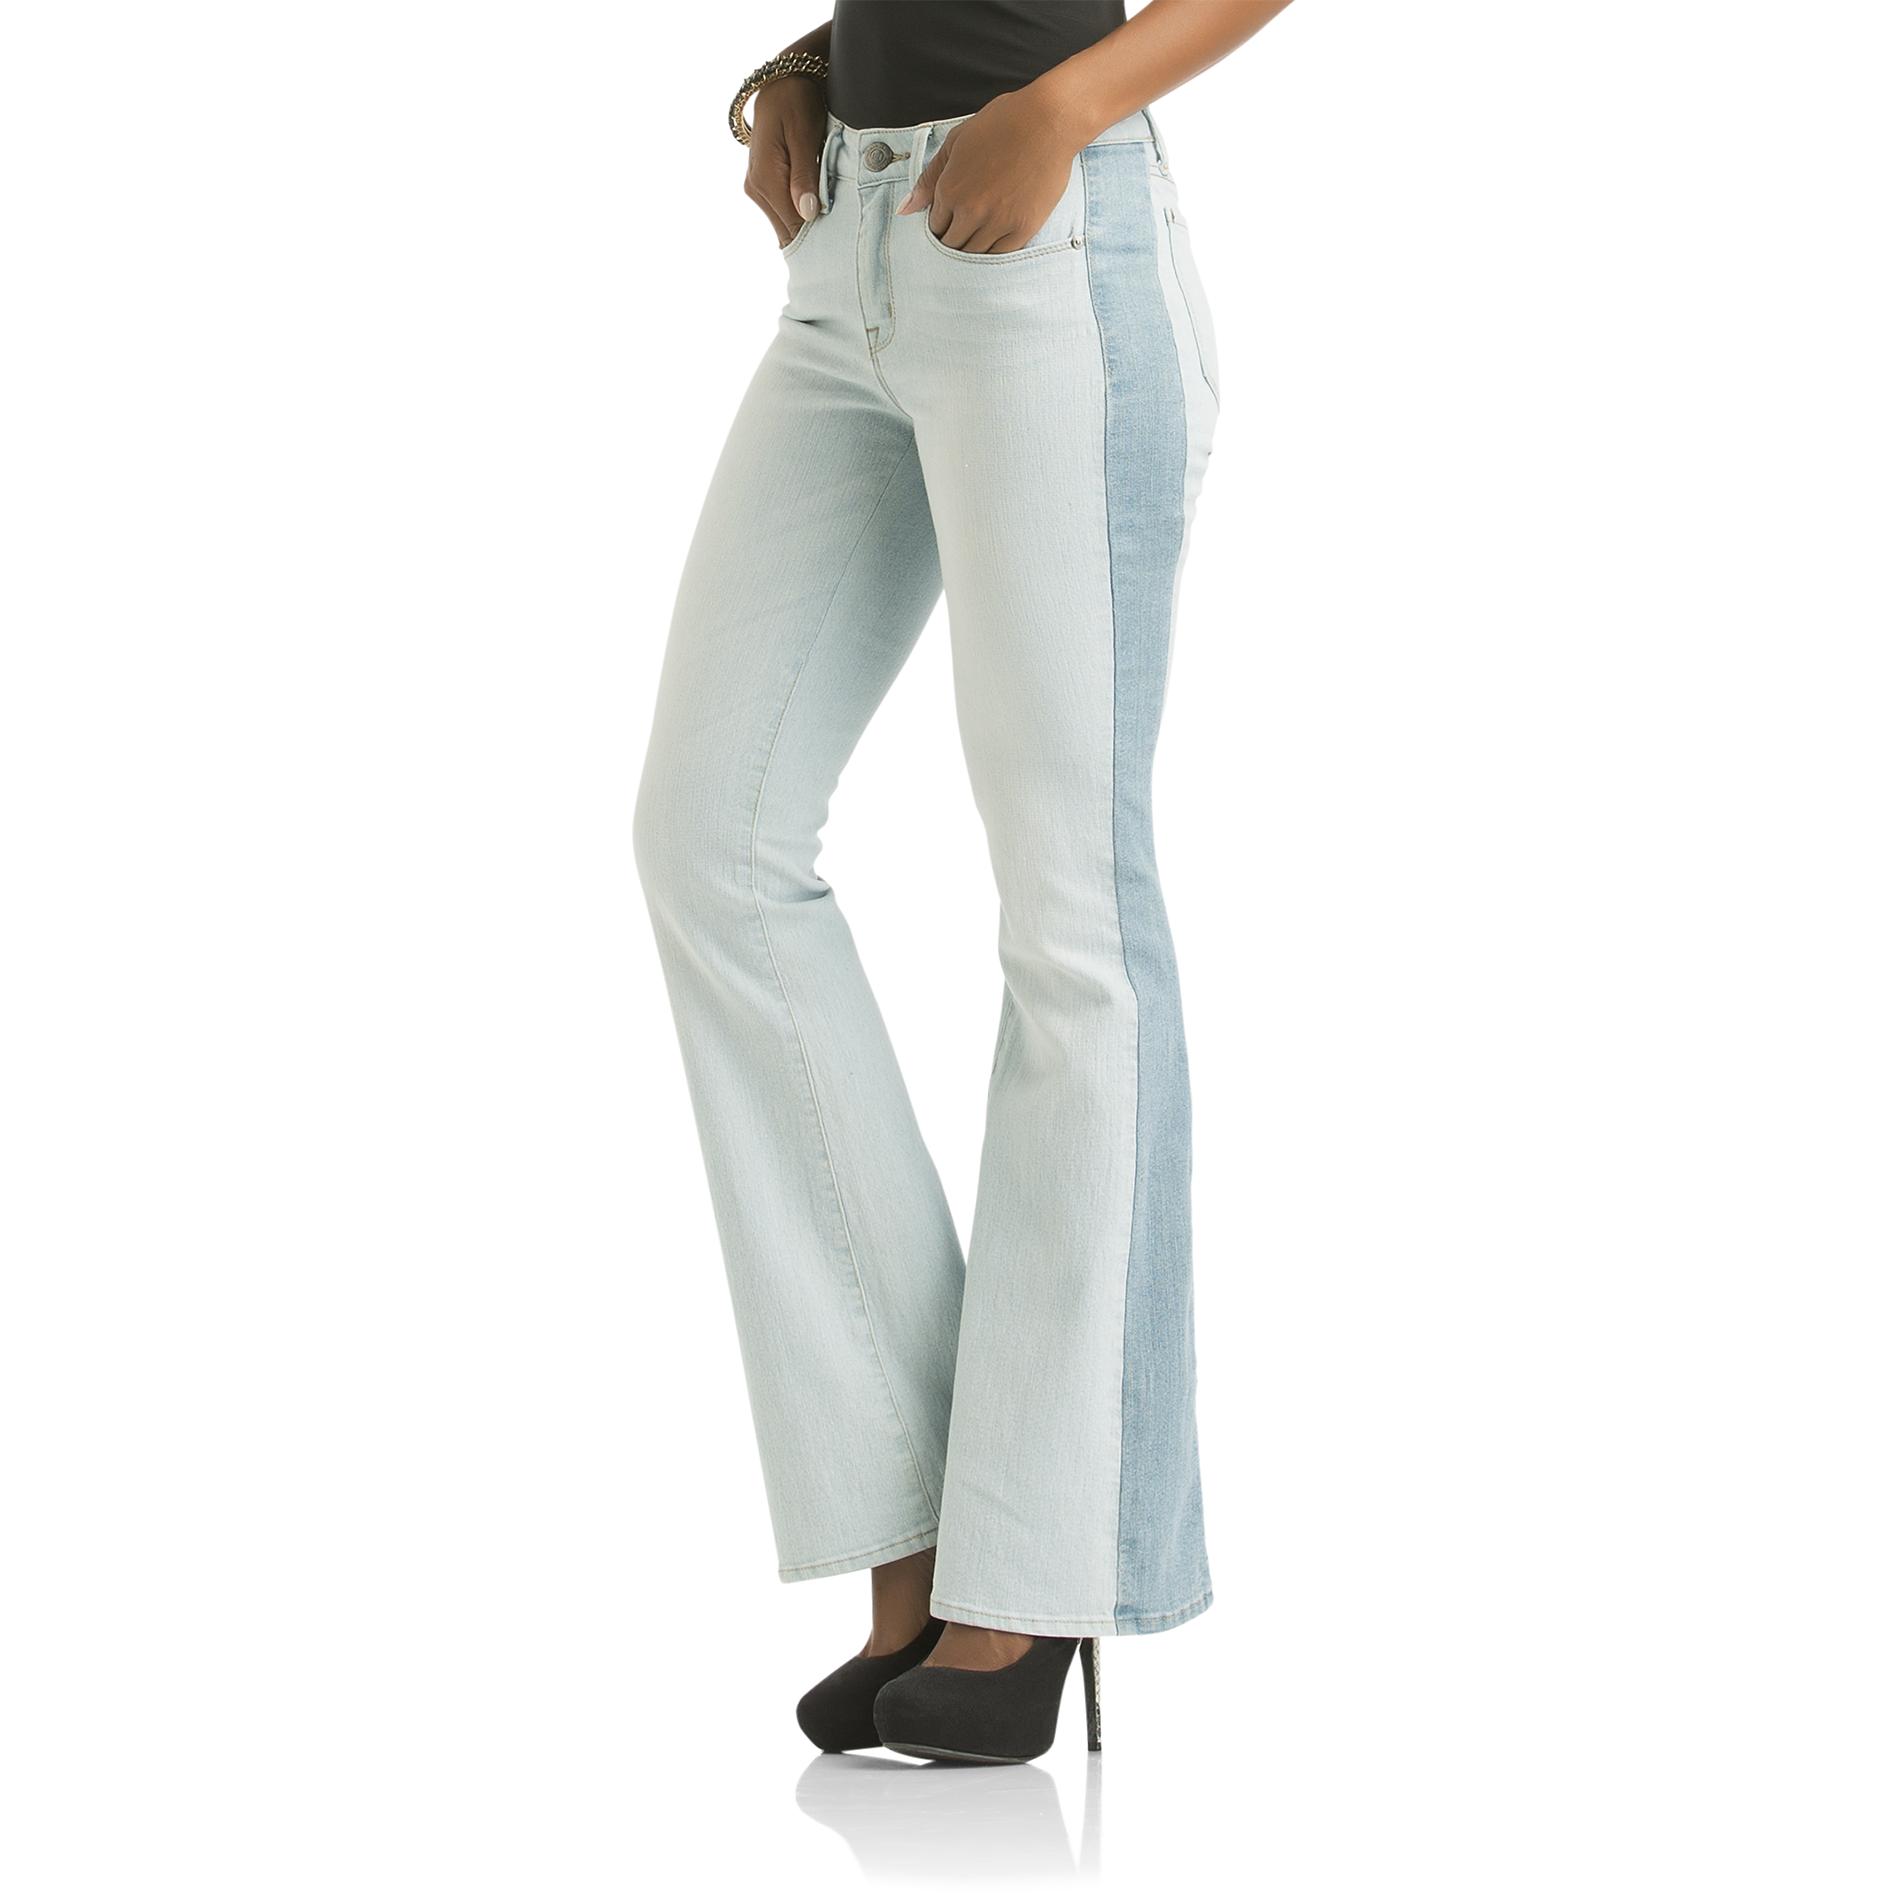 Kardashian Kollection Women's Wide Flare Jeans - Tuxedo Stripes